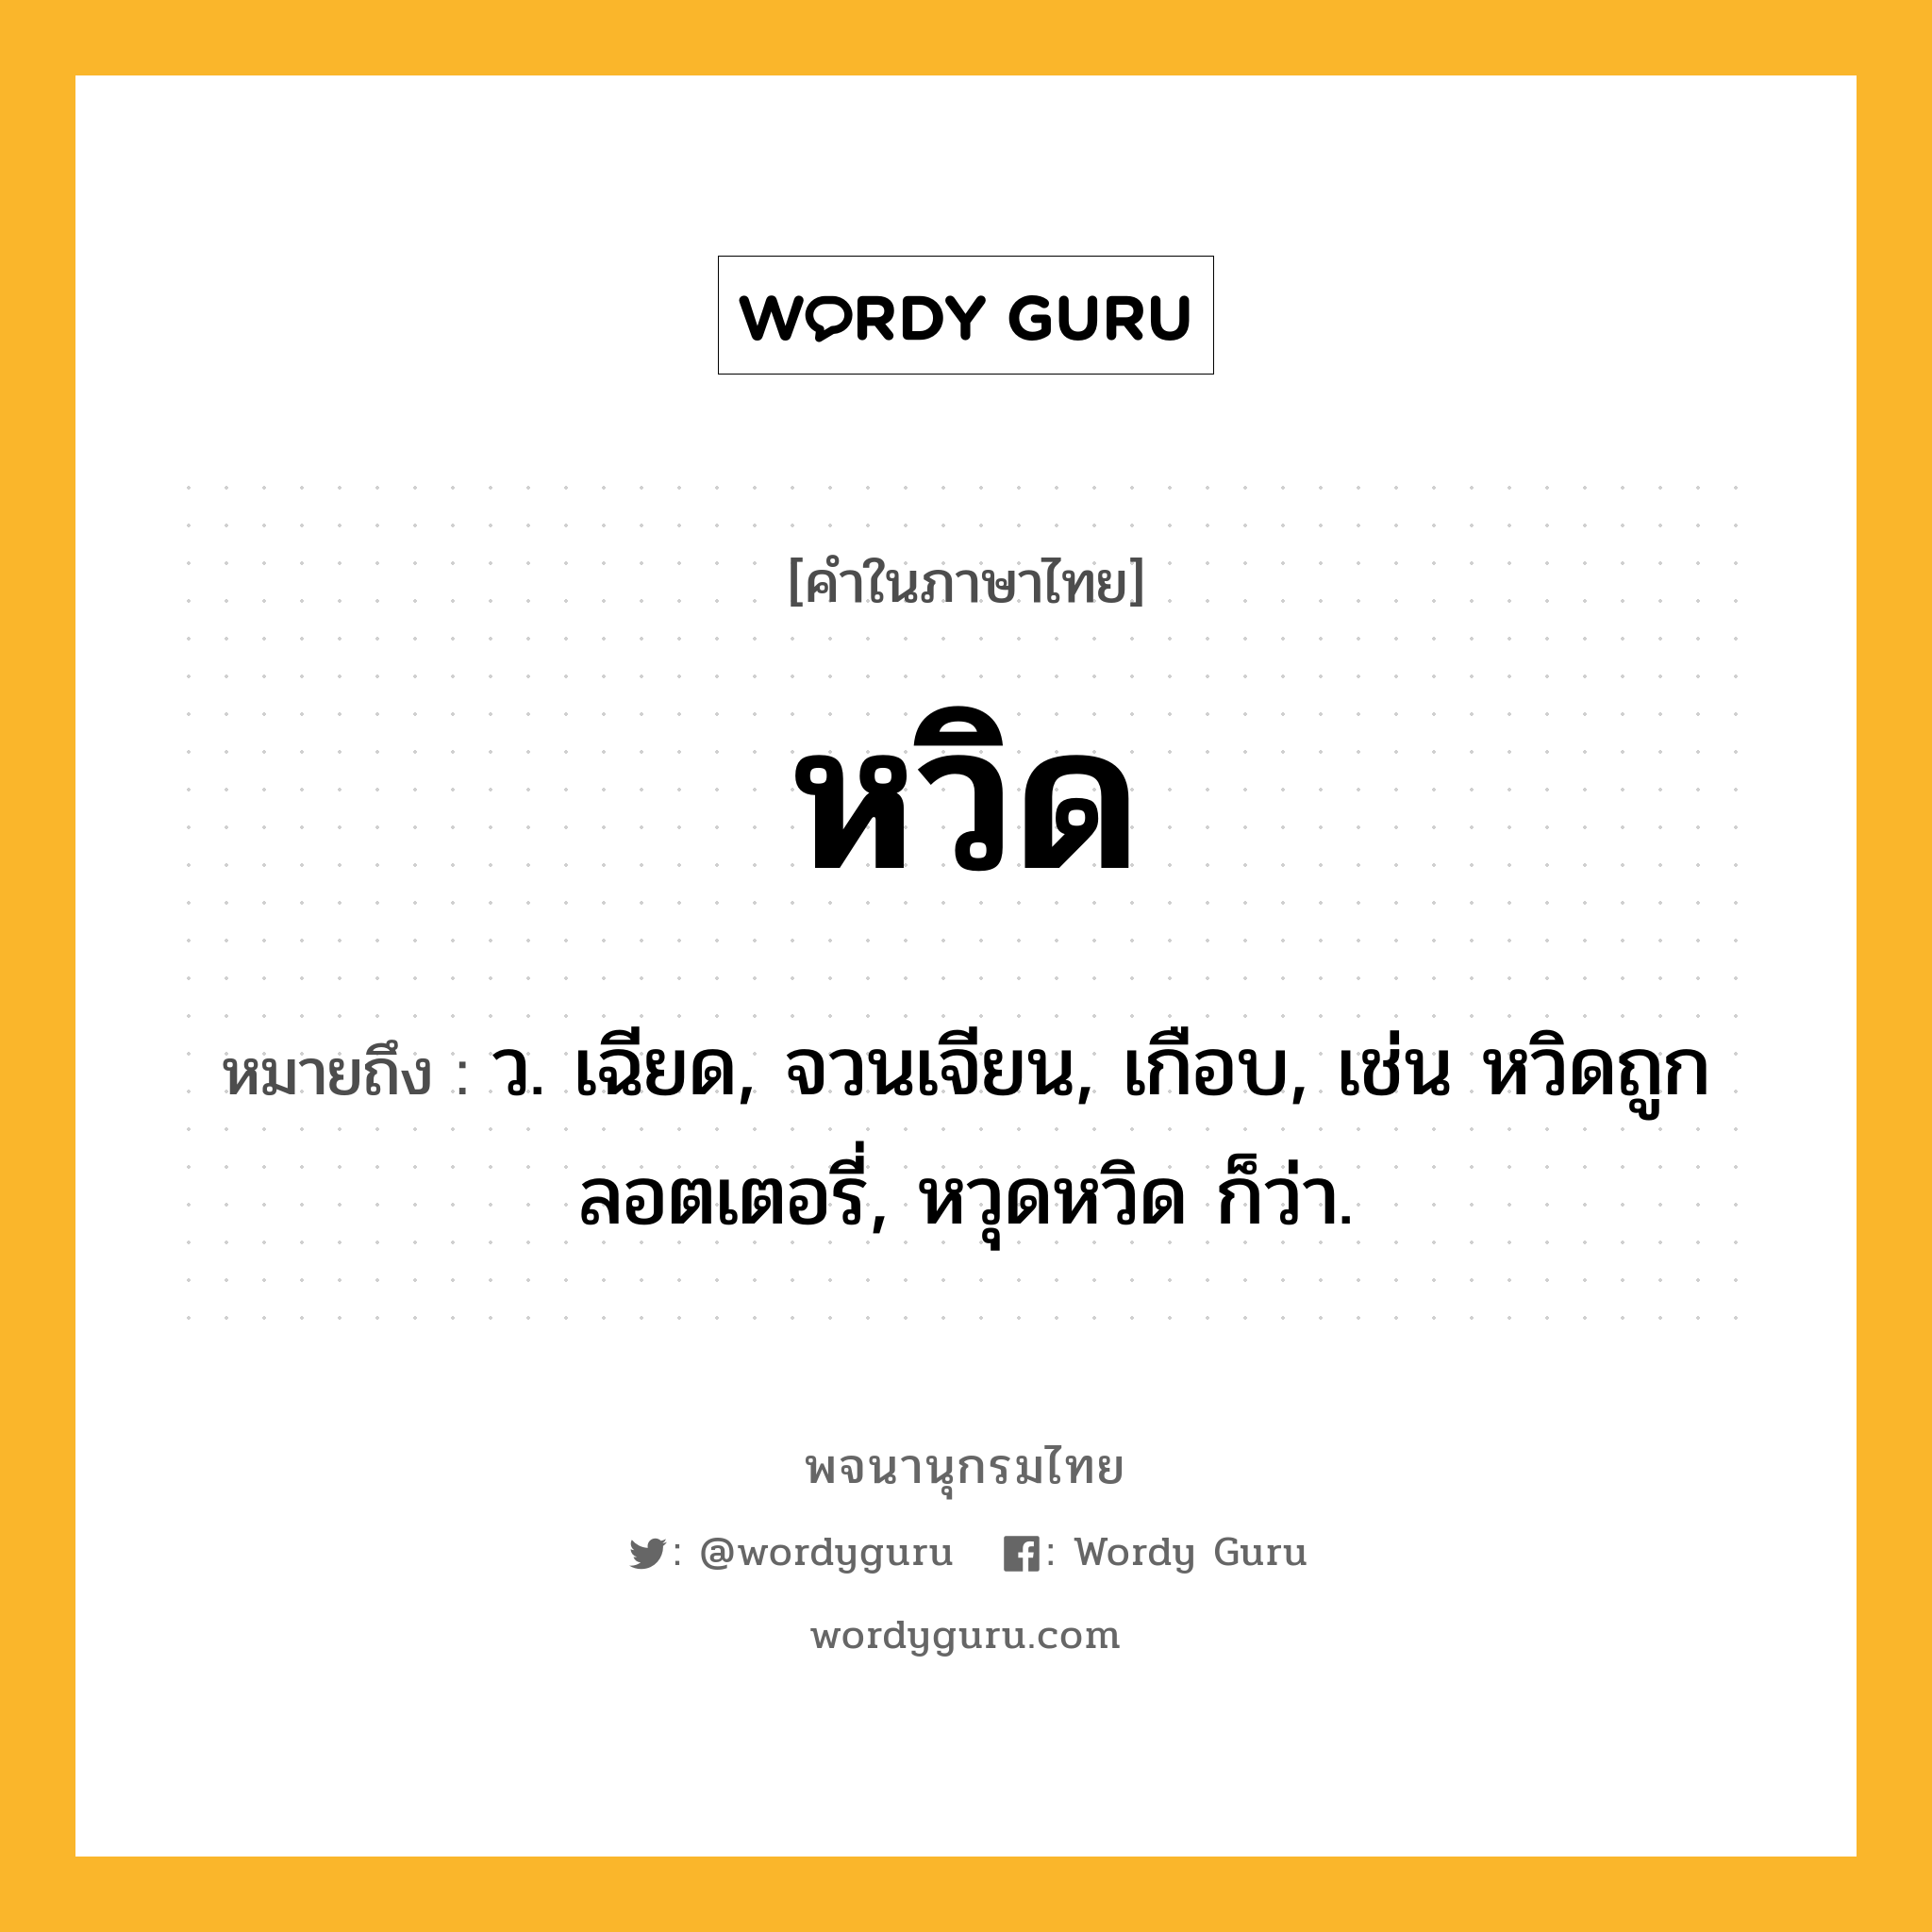 หวิด ความหมาย หมายถึงอะไร?, คำในภาษาไทย หวิด หมายถึง ว. เฉียด, จวนเจียน, เกือบ, เช่น หวิดถูกลอตเตอรี่, หวุดหวิด ก็ว่า.